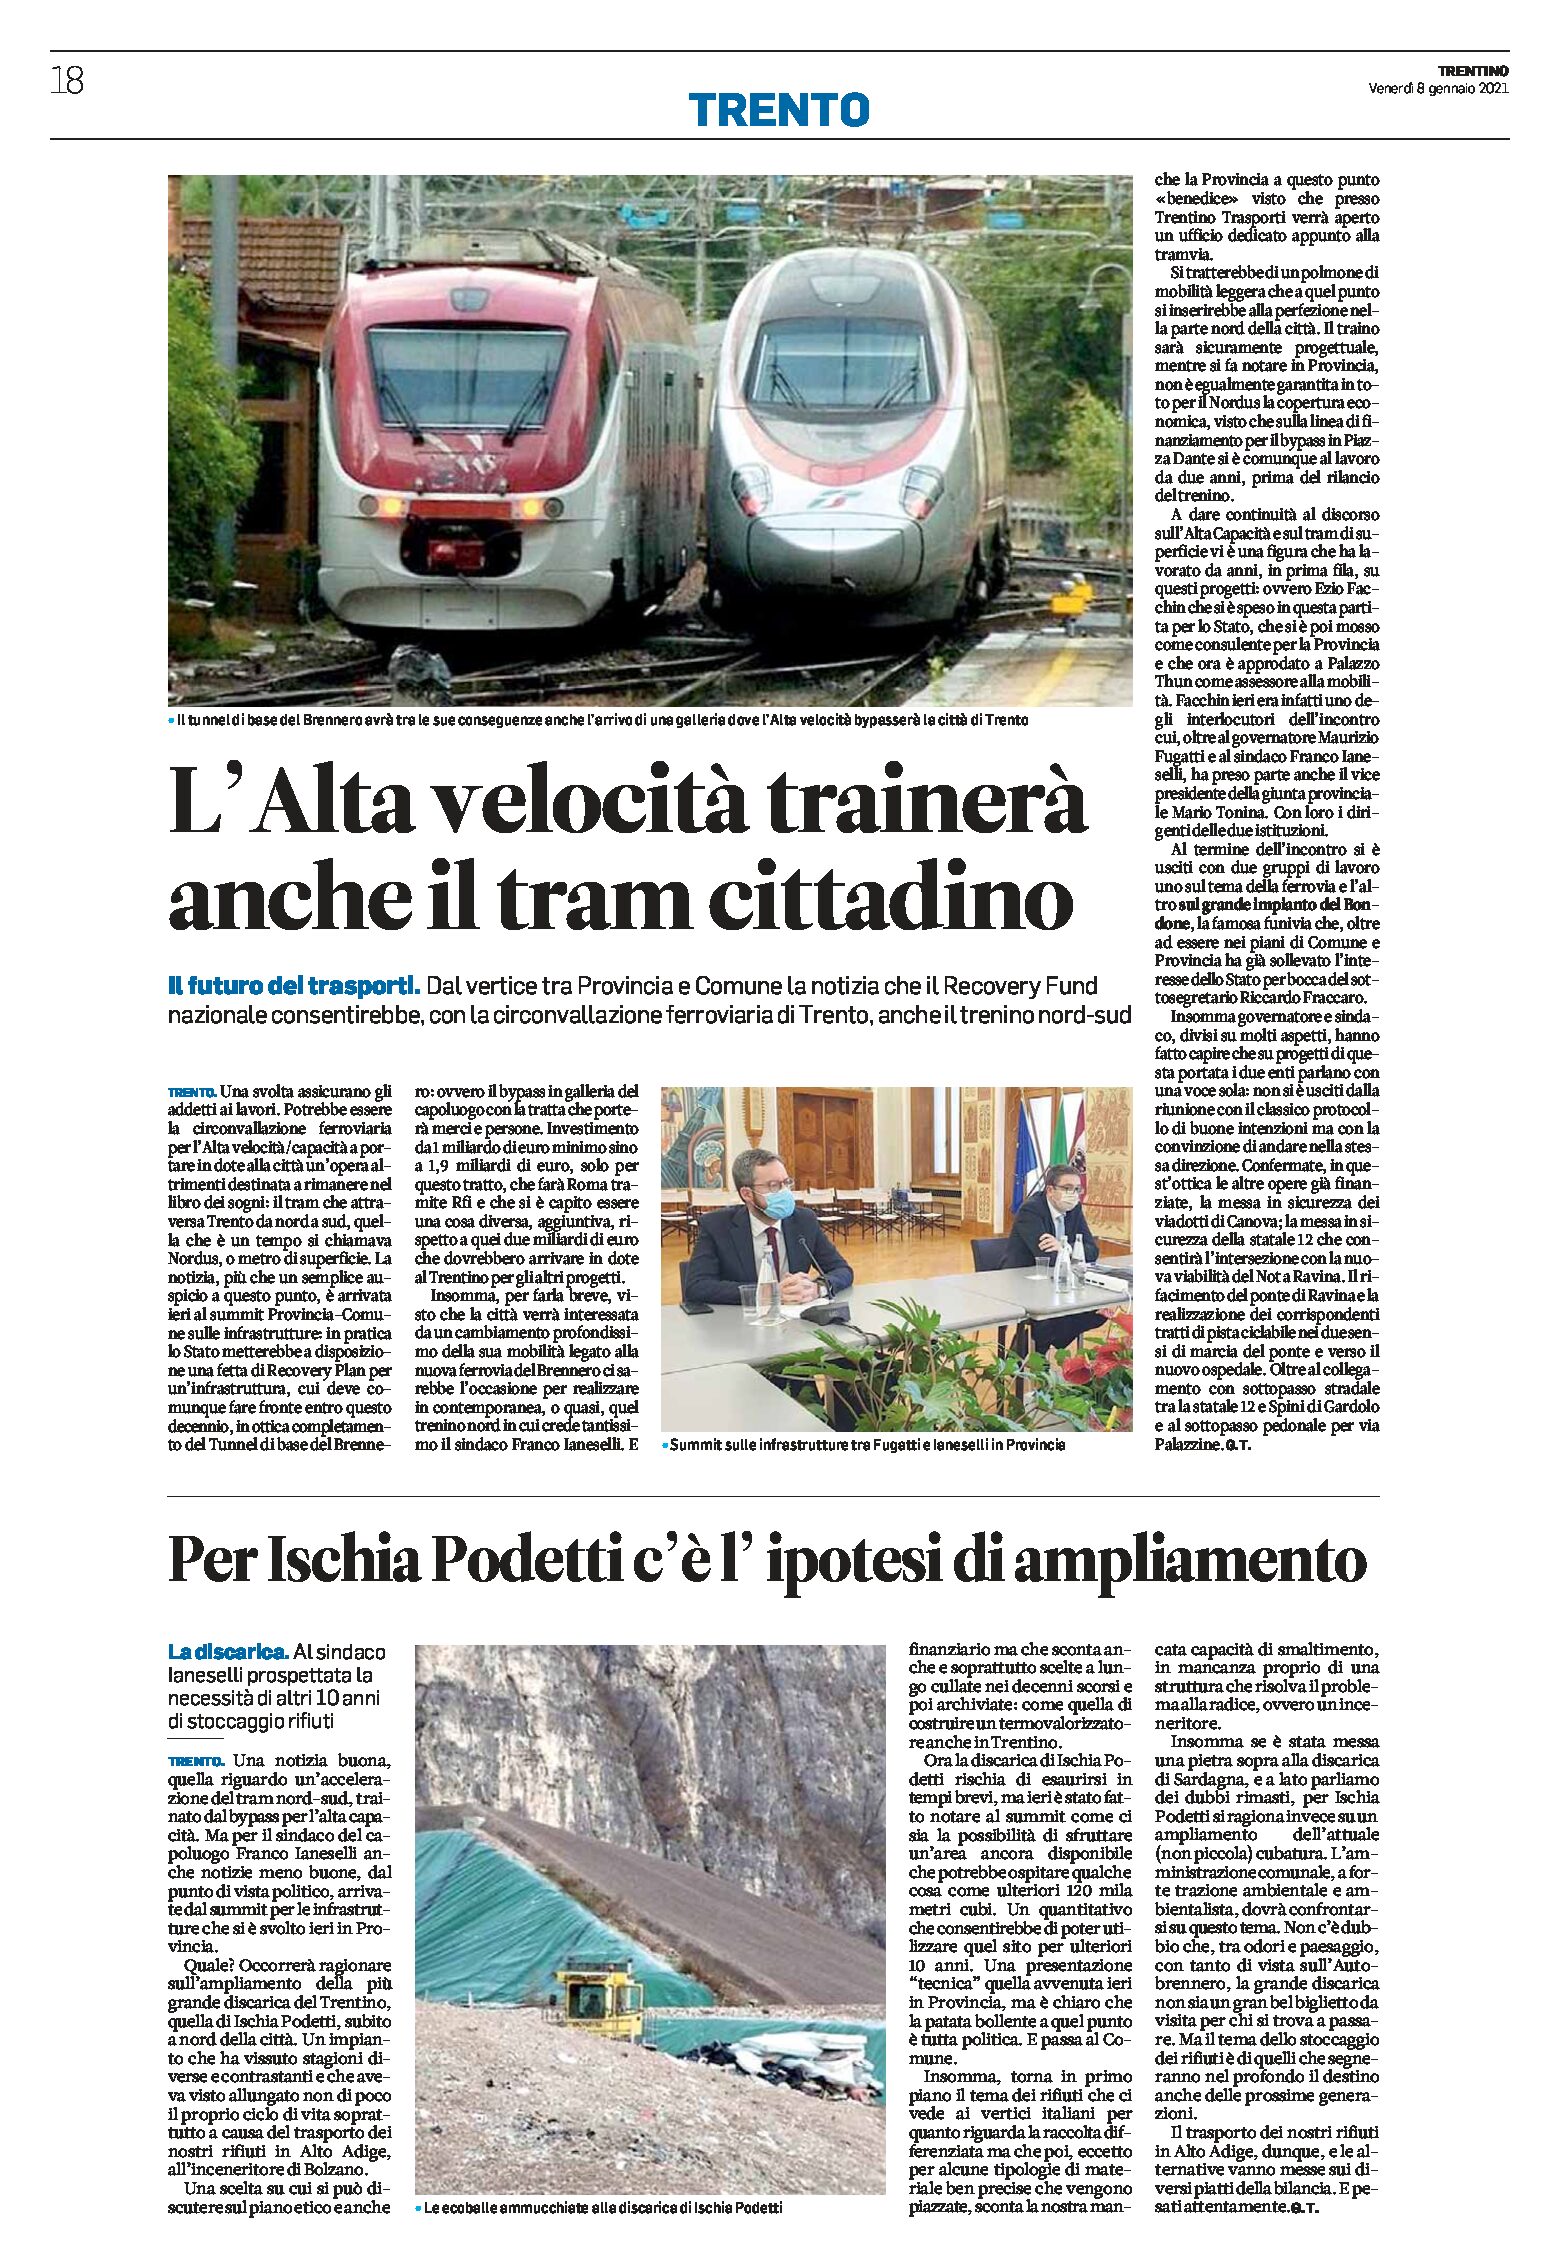 Trento: il futuro dei trasporti, l’alta velocità trainerà anche il tram cittadino